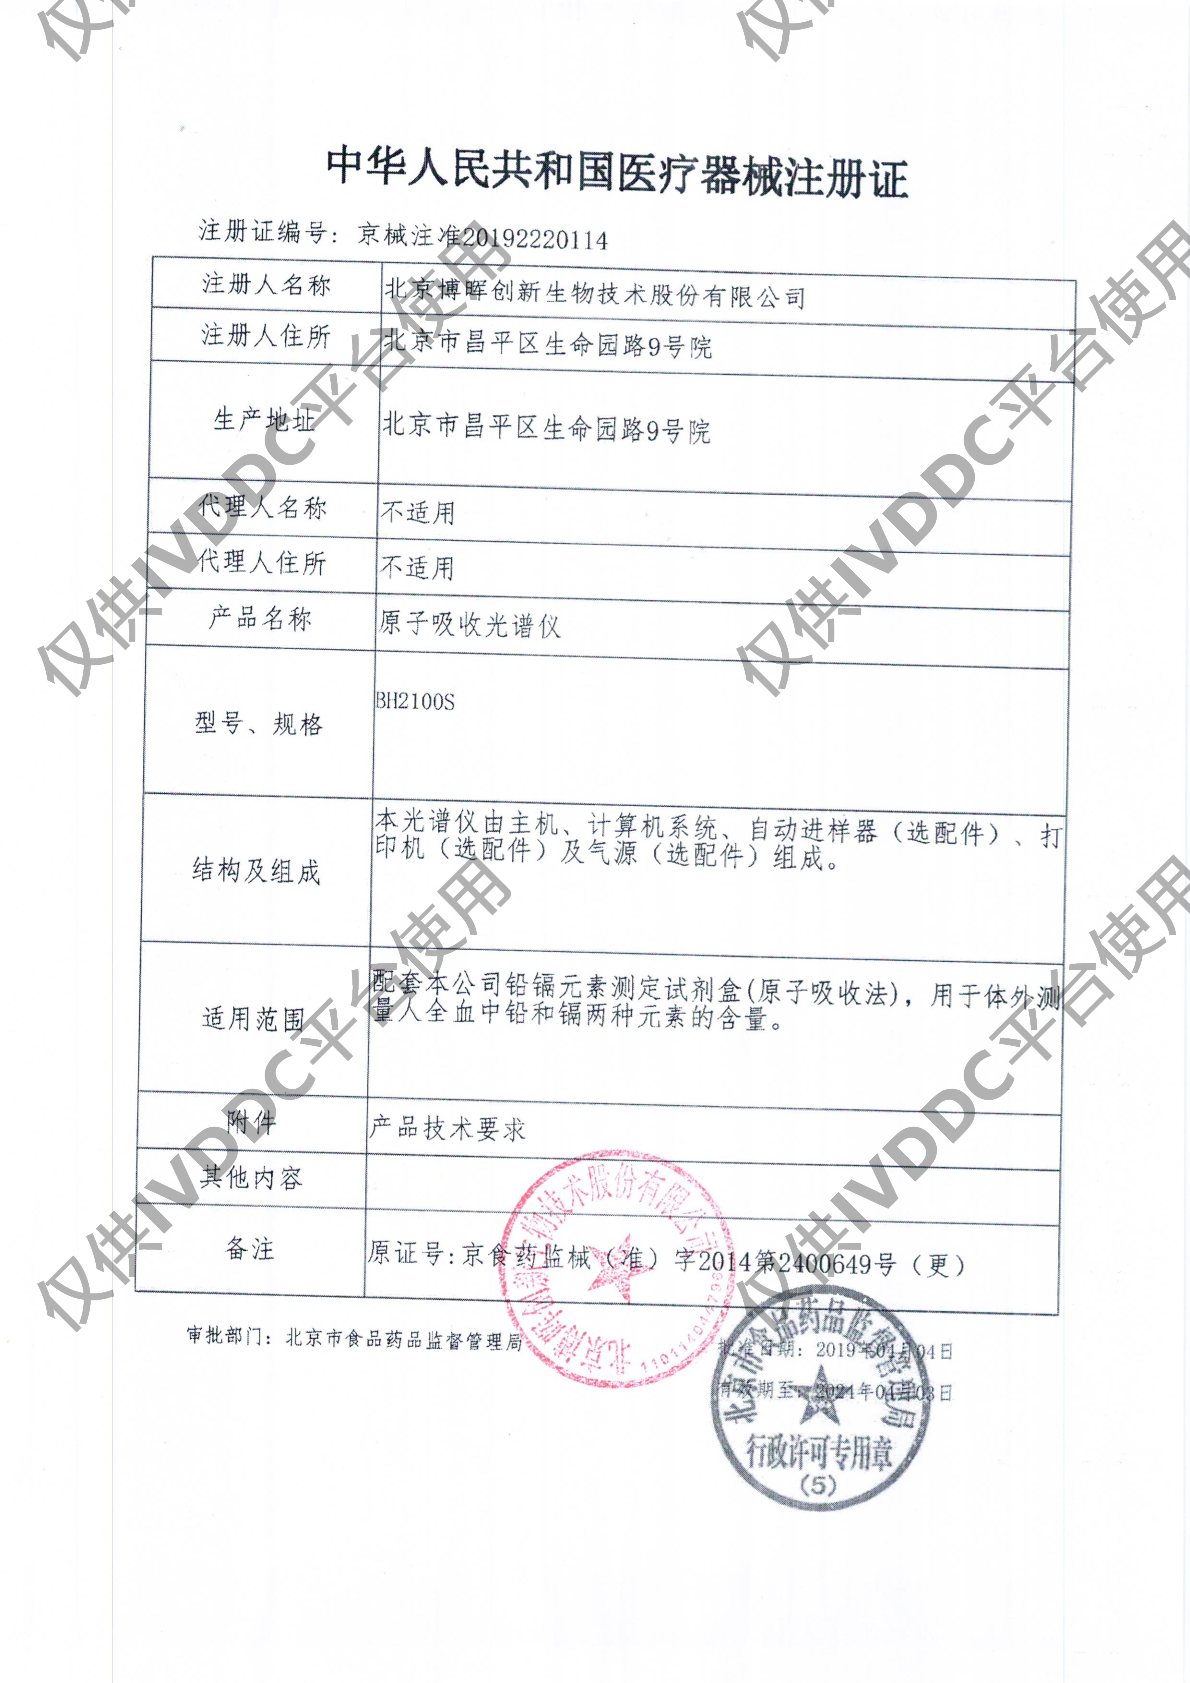 【北京博晖】 原子吸收光谱仪 BH2100S注册证